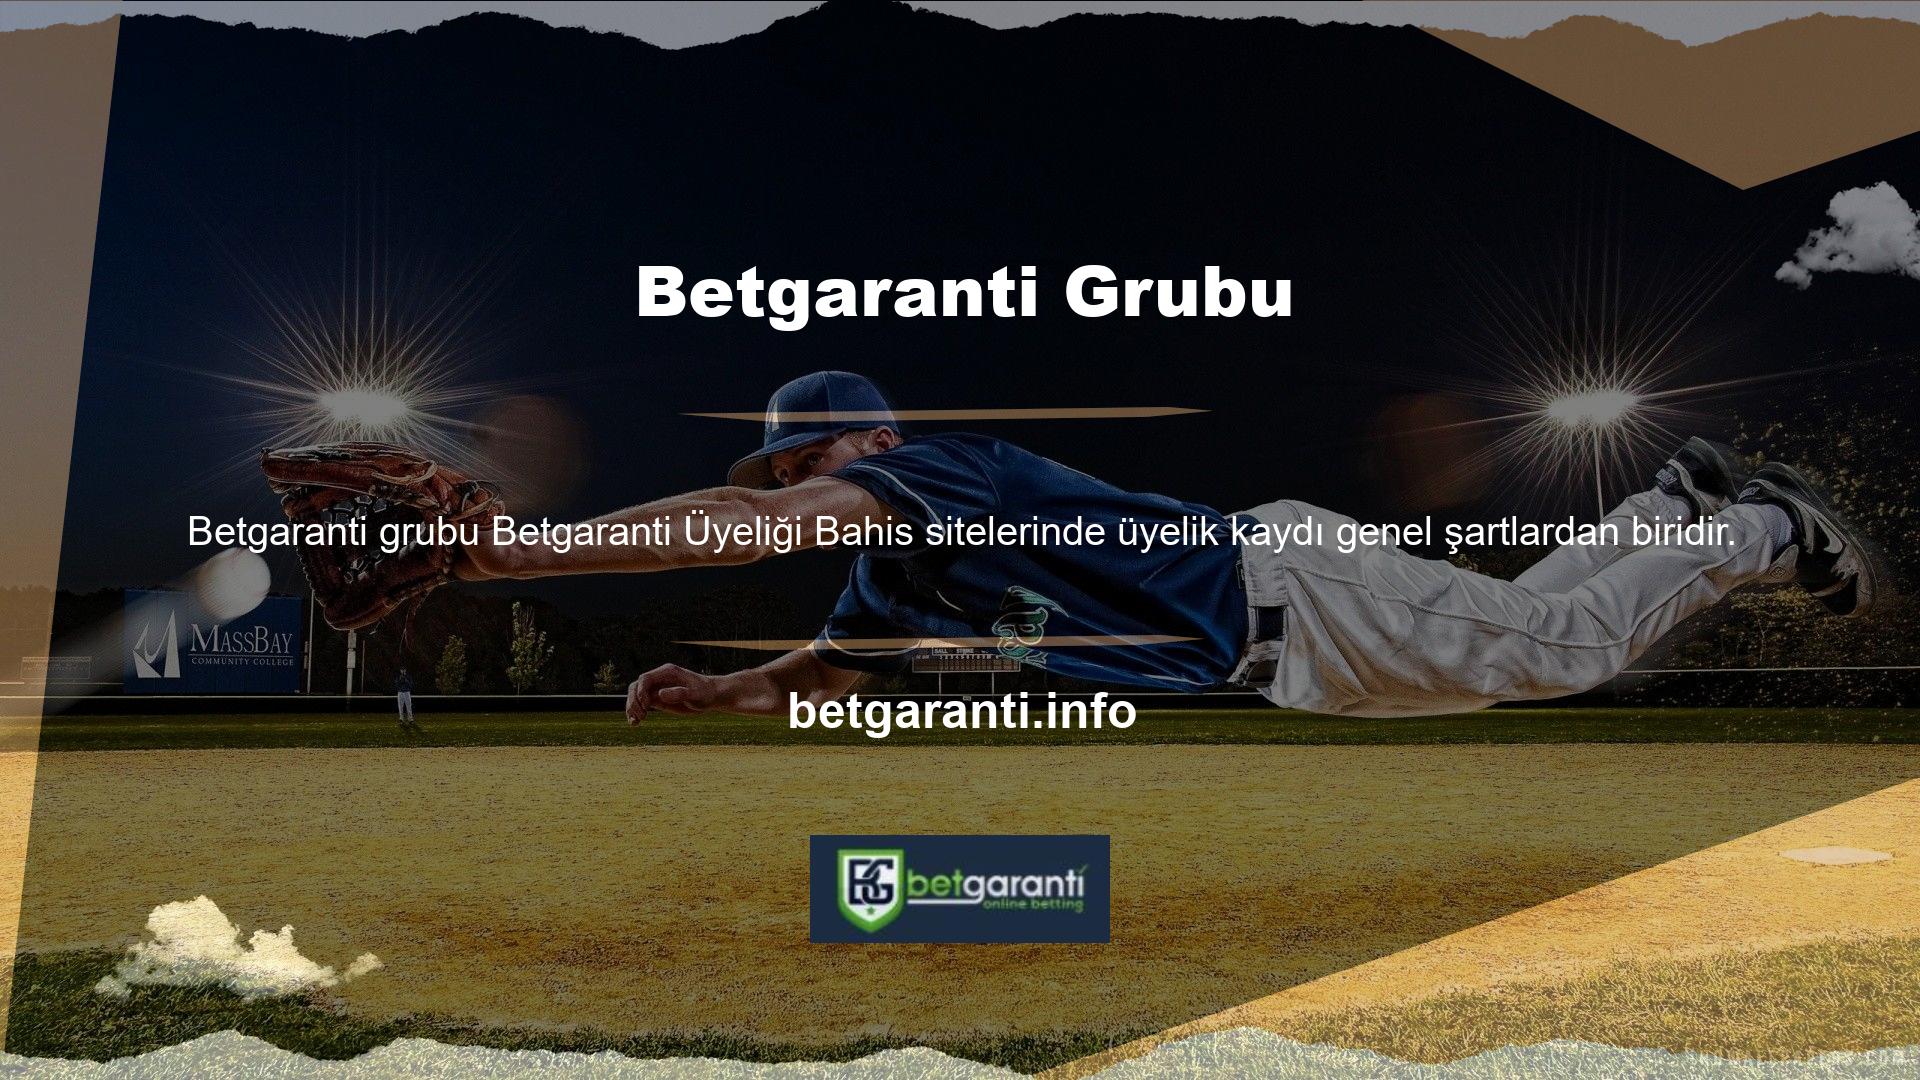 Bir bahis sitesi olan Betgaranti, yayınlar yapmaktadır